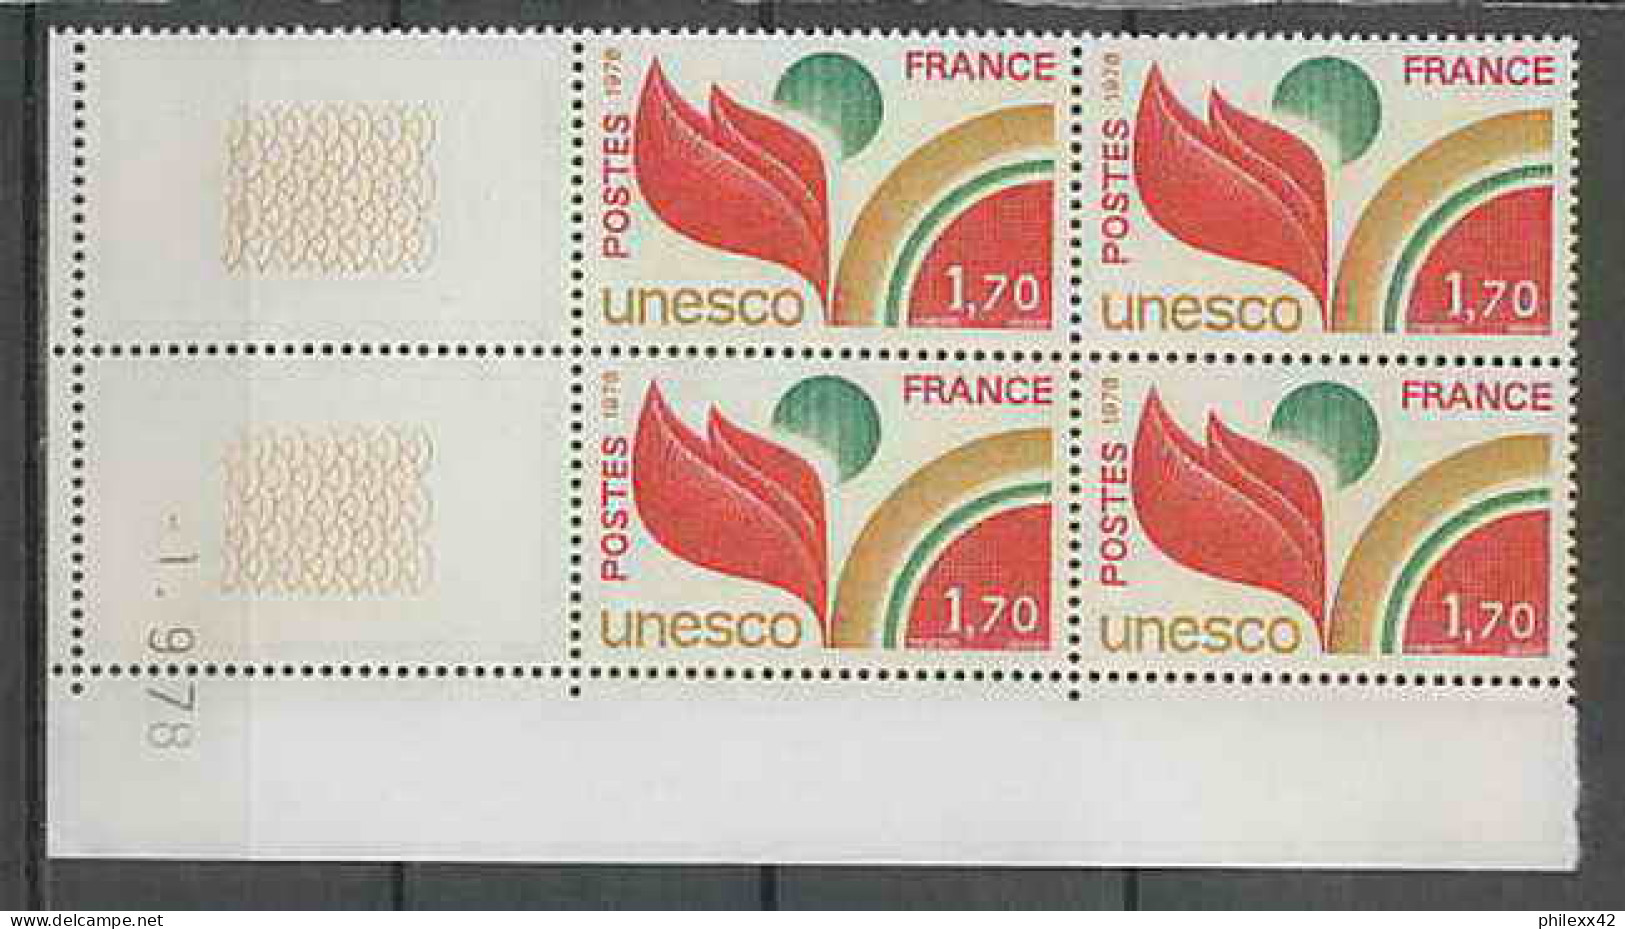 1301 - France - Coin Daté TB Neuf ** Service Unesco N°57 Date 1/9/1976 Sans Trait  - Dienstmarken